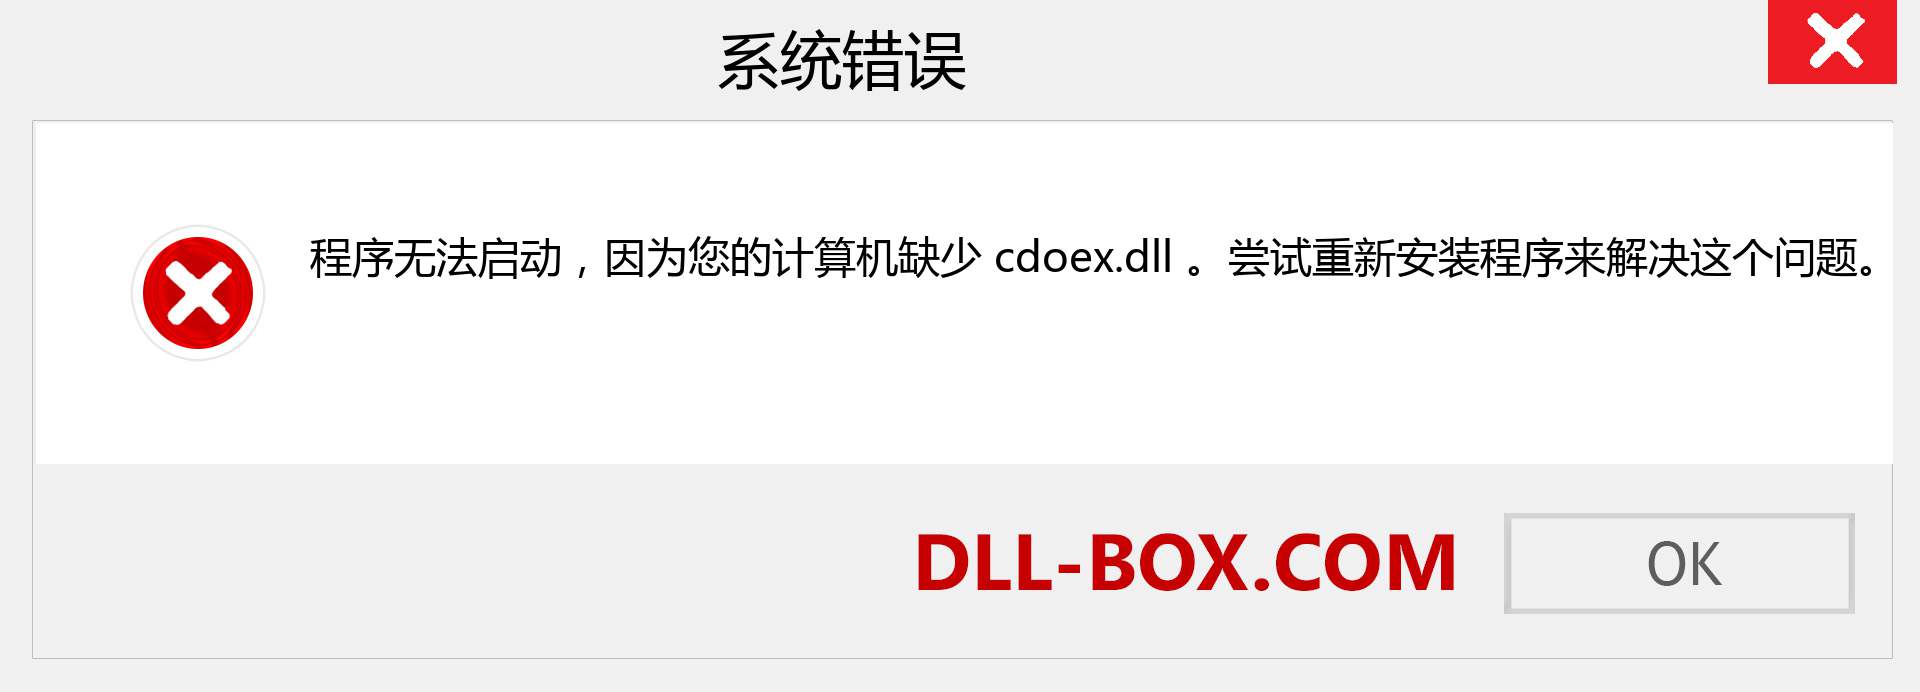 cdoex.dll 文件丢失？。 适用于 Windows 7、8、10 的下载 - 修复 Windows、照片、图像上的 cdoex dll 丢失错误